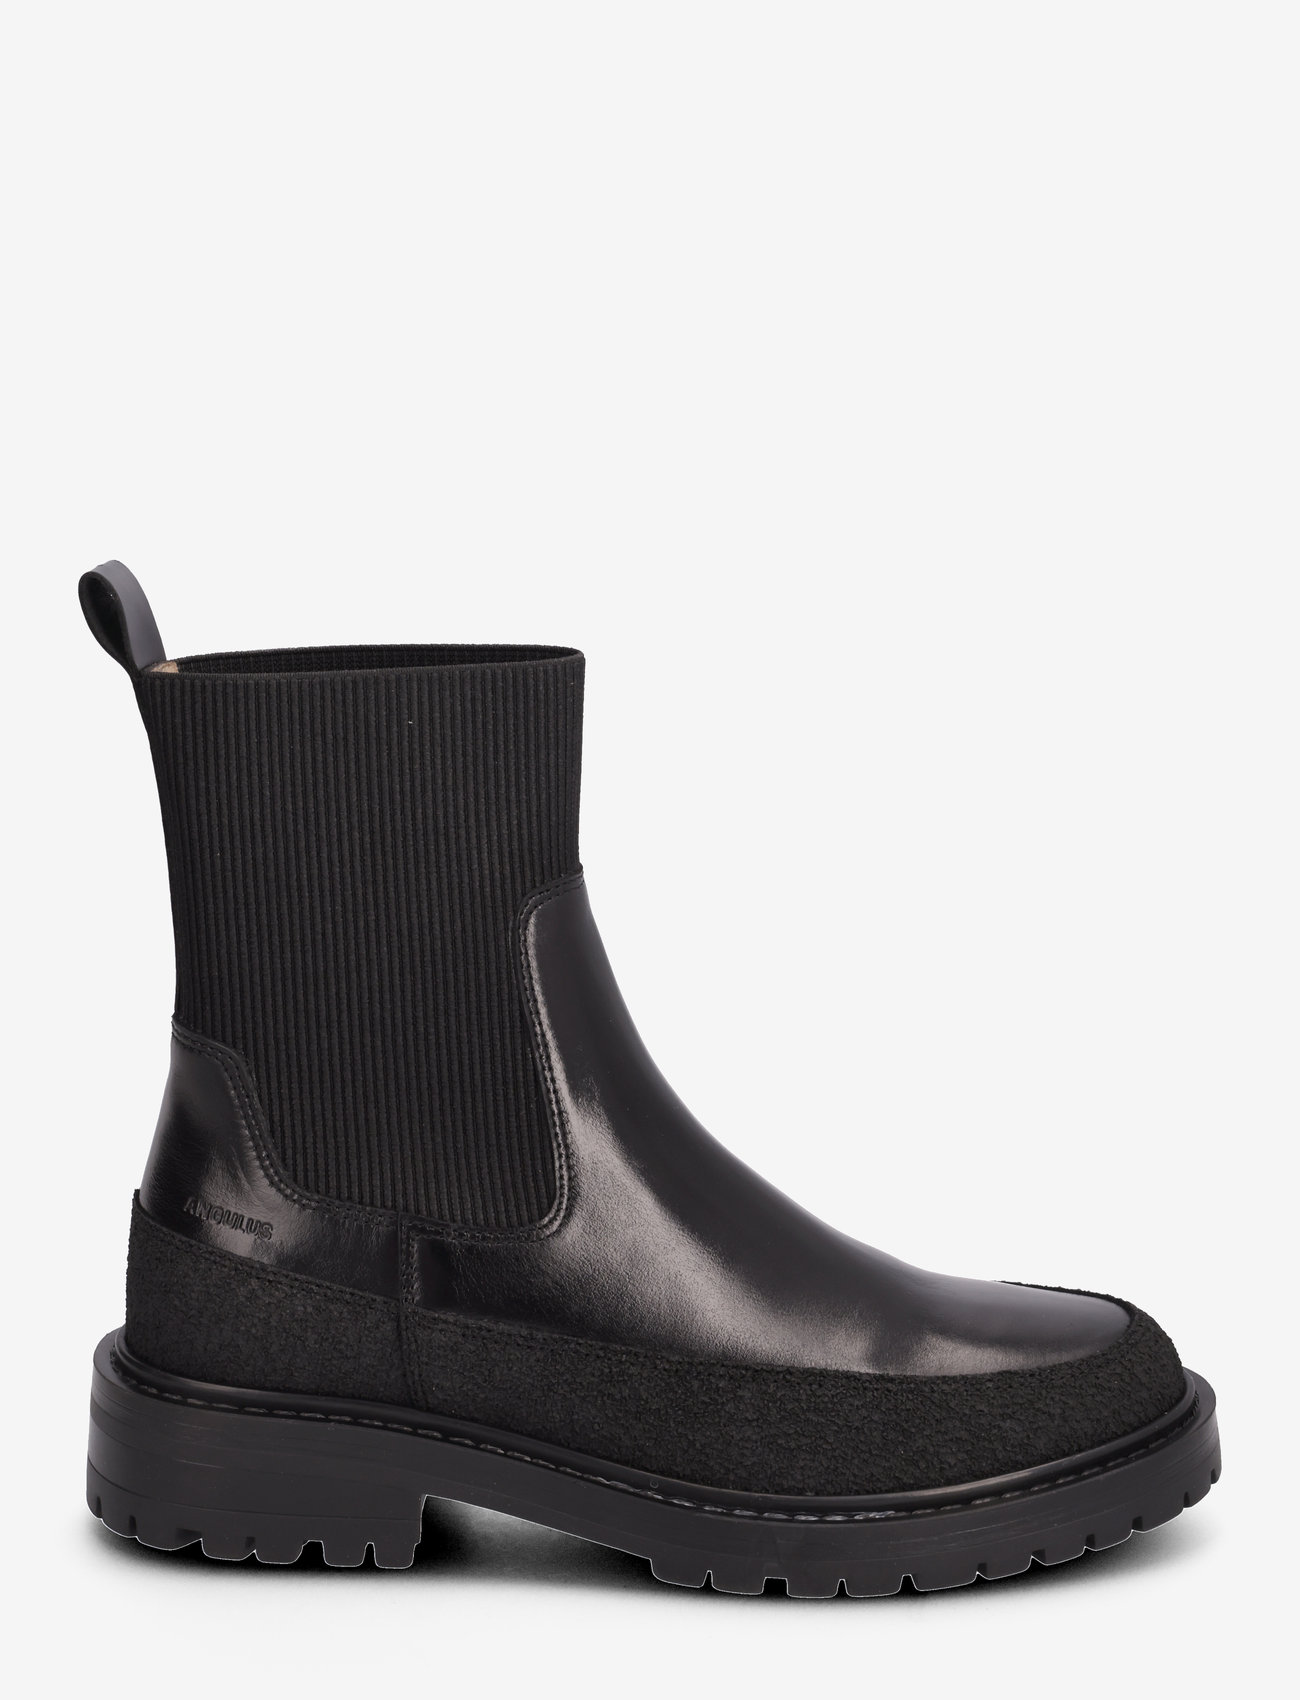 ANGULUS - Boots - flat - chelsea boots - 1321/1835/019 black - 1